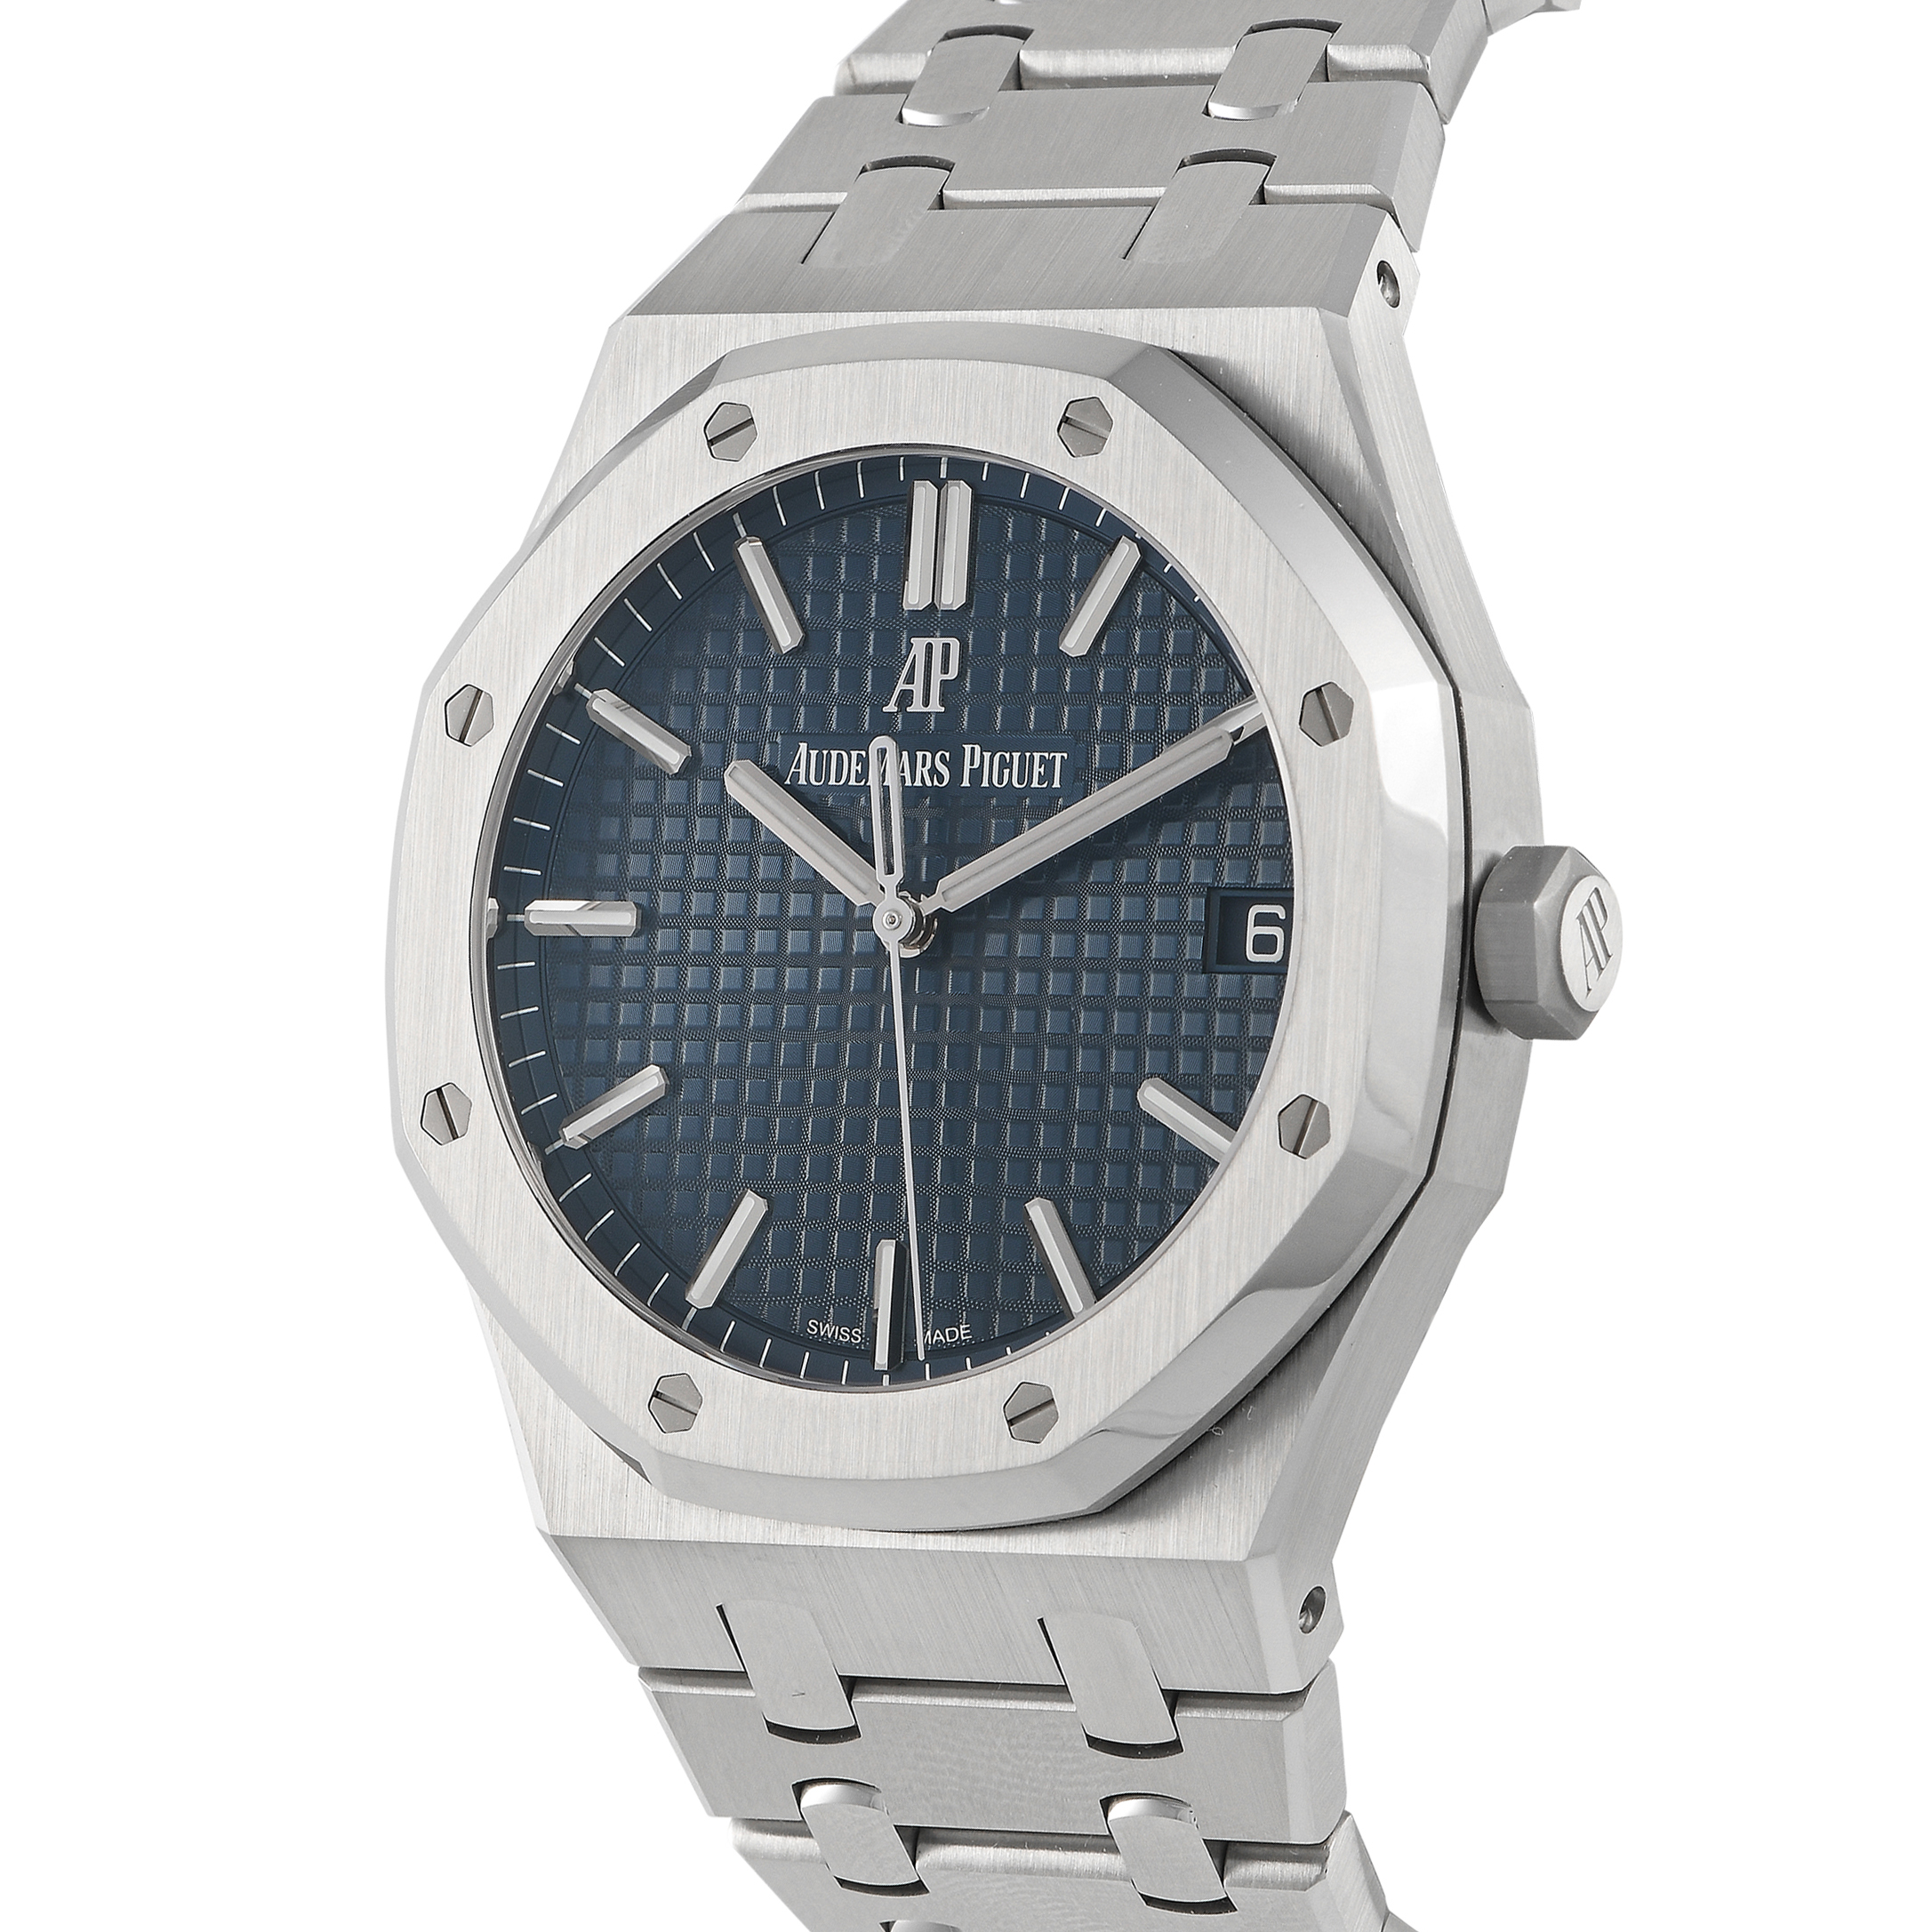 Audemars Piguet Royal Oak Blue Dial Watch 15500ST.OO.1220ST.01